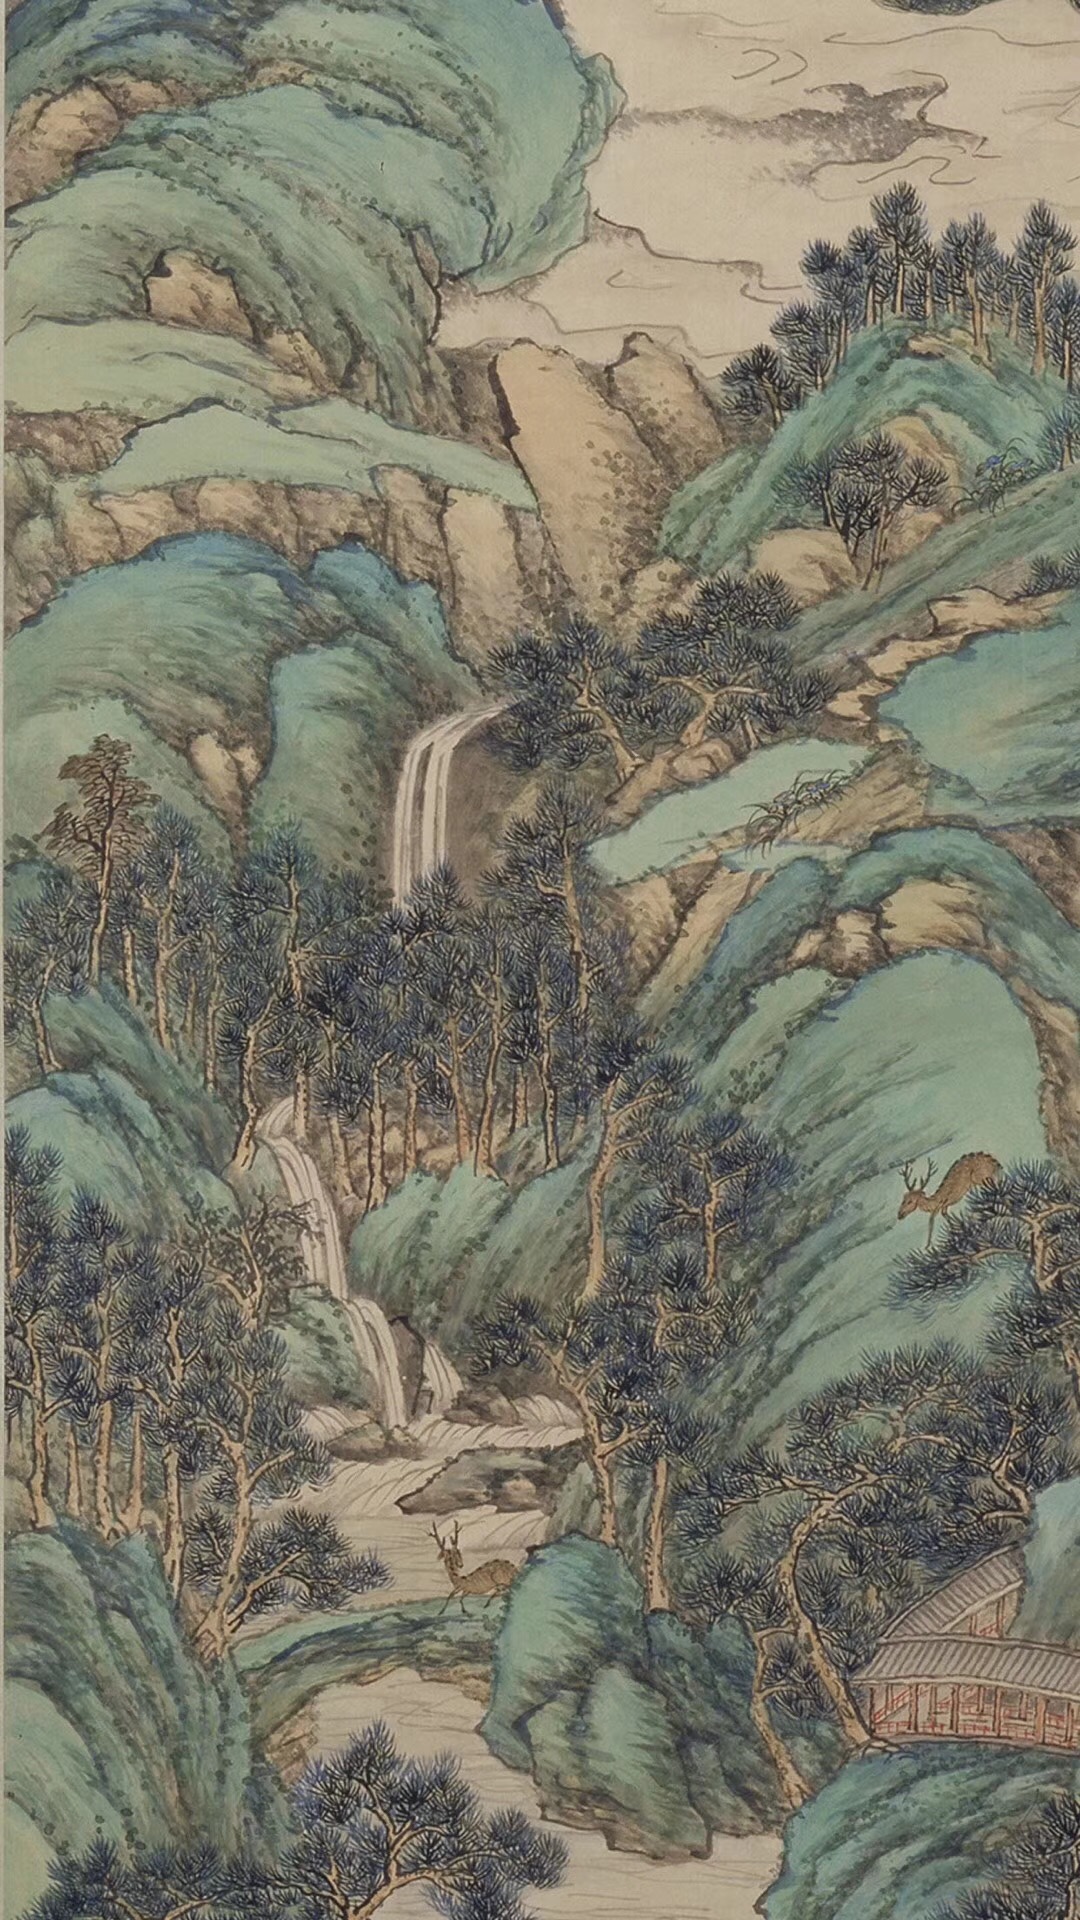 盎然春色的《仙境春长图》：青绿山水生机无限